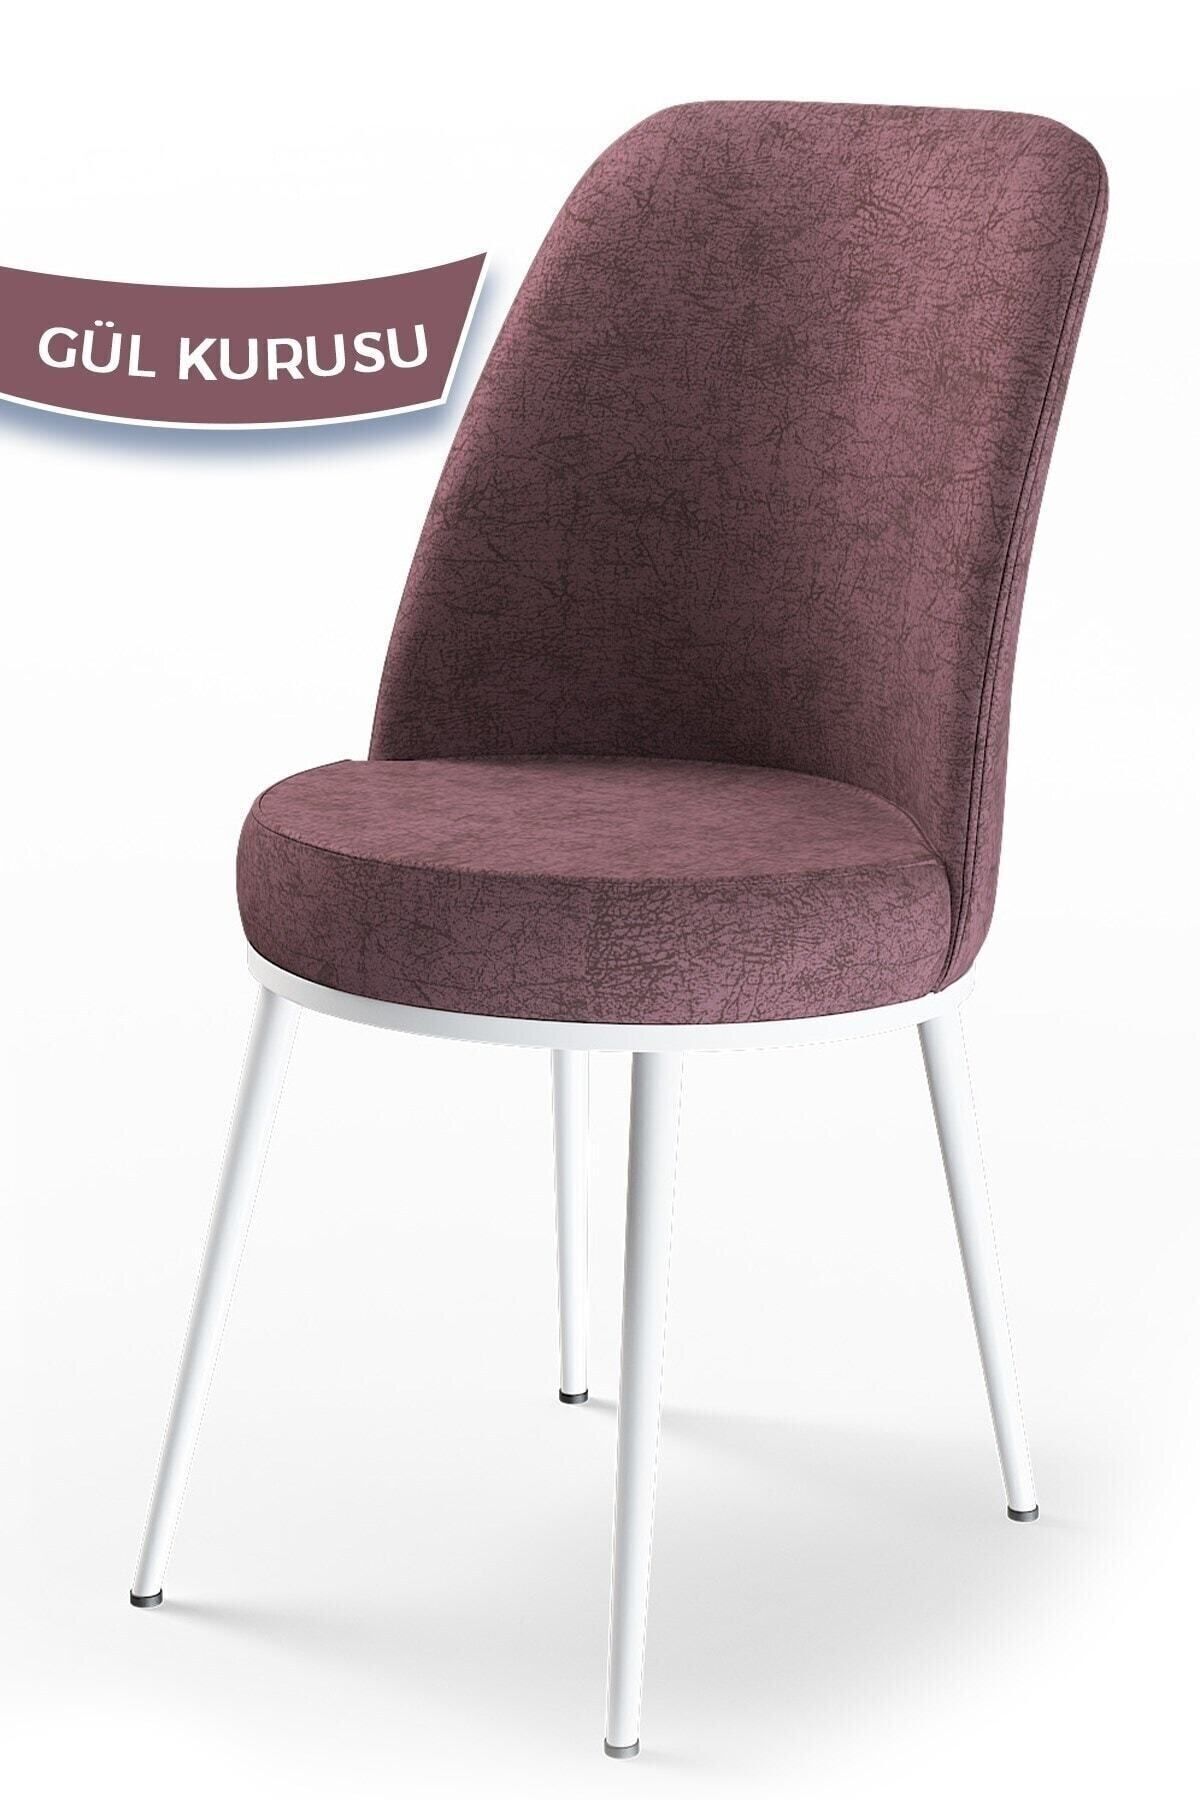 Canisa Concept Dexa Serisi, Üst Kalite Mutfak Sandalyesi, Metal Beyaz Iskeletli, Gülkurusu Sandalye